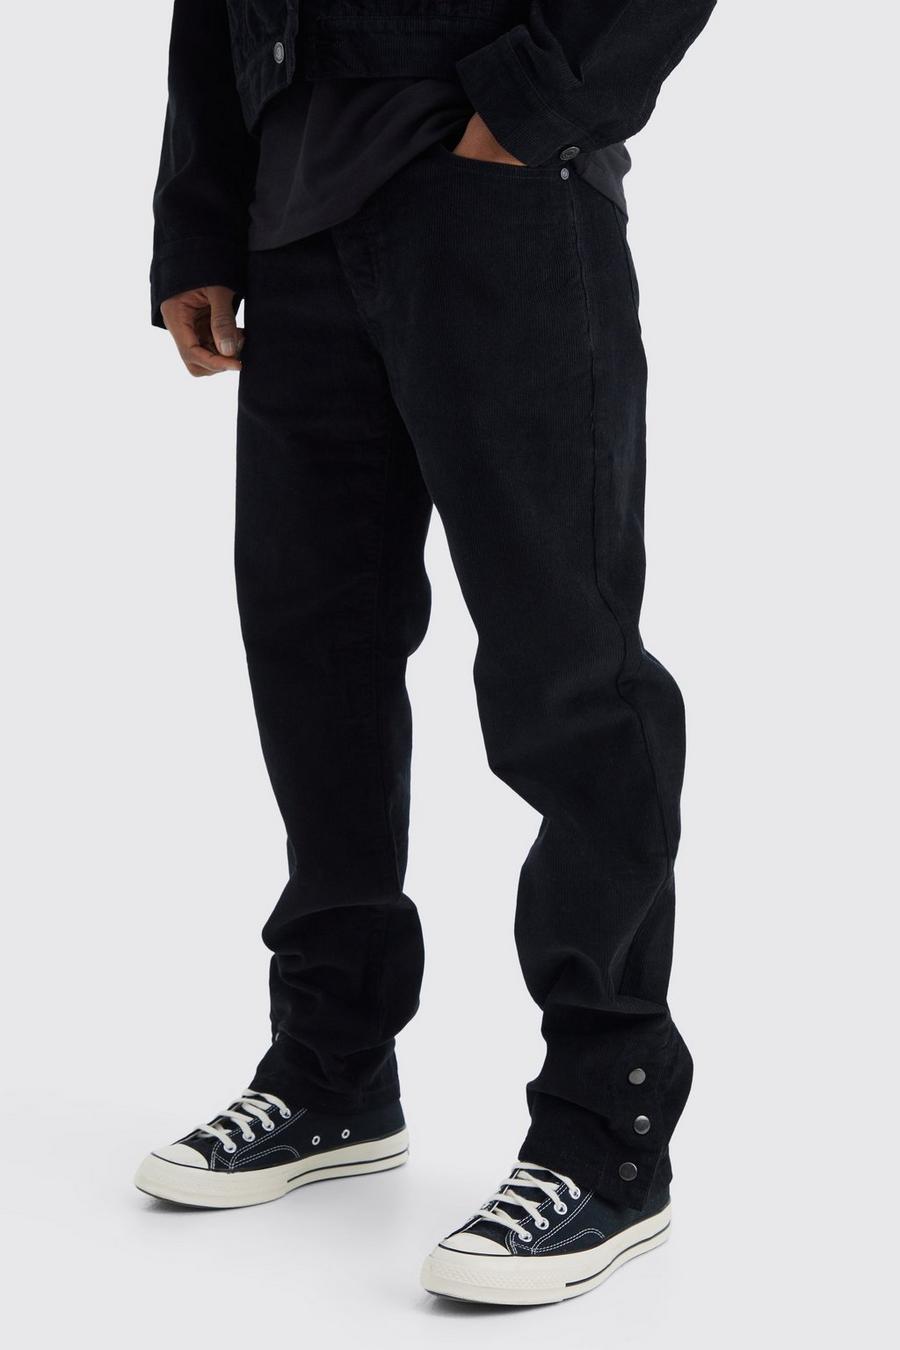 Pantalón de pana holgado con botones de presión y cintura fija, Black negro